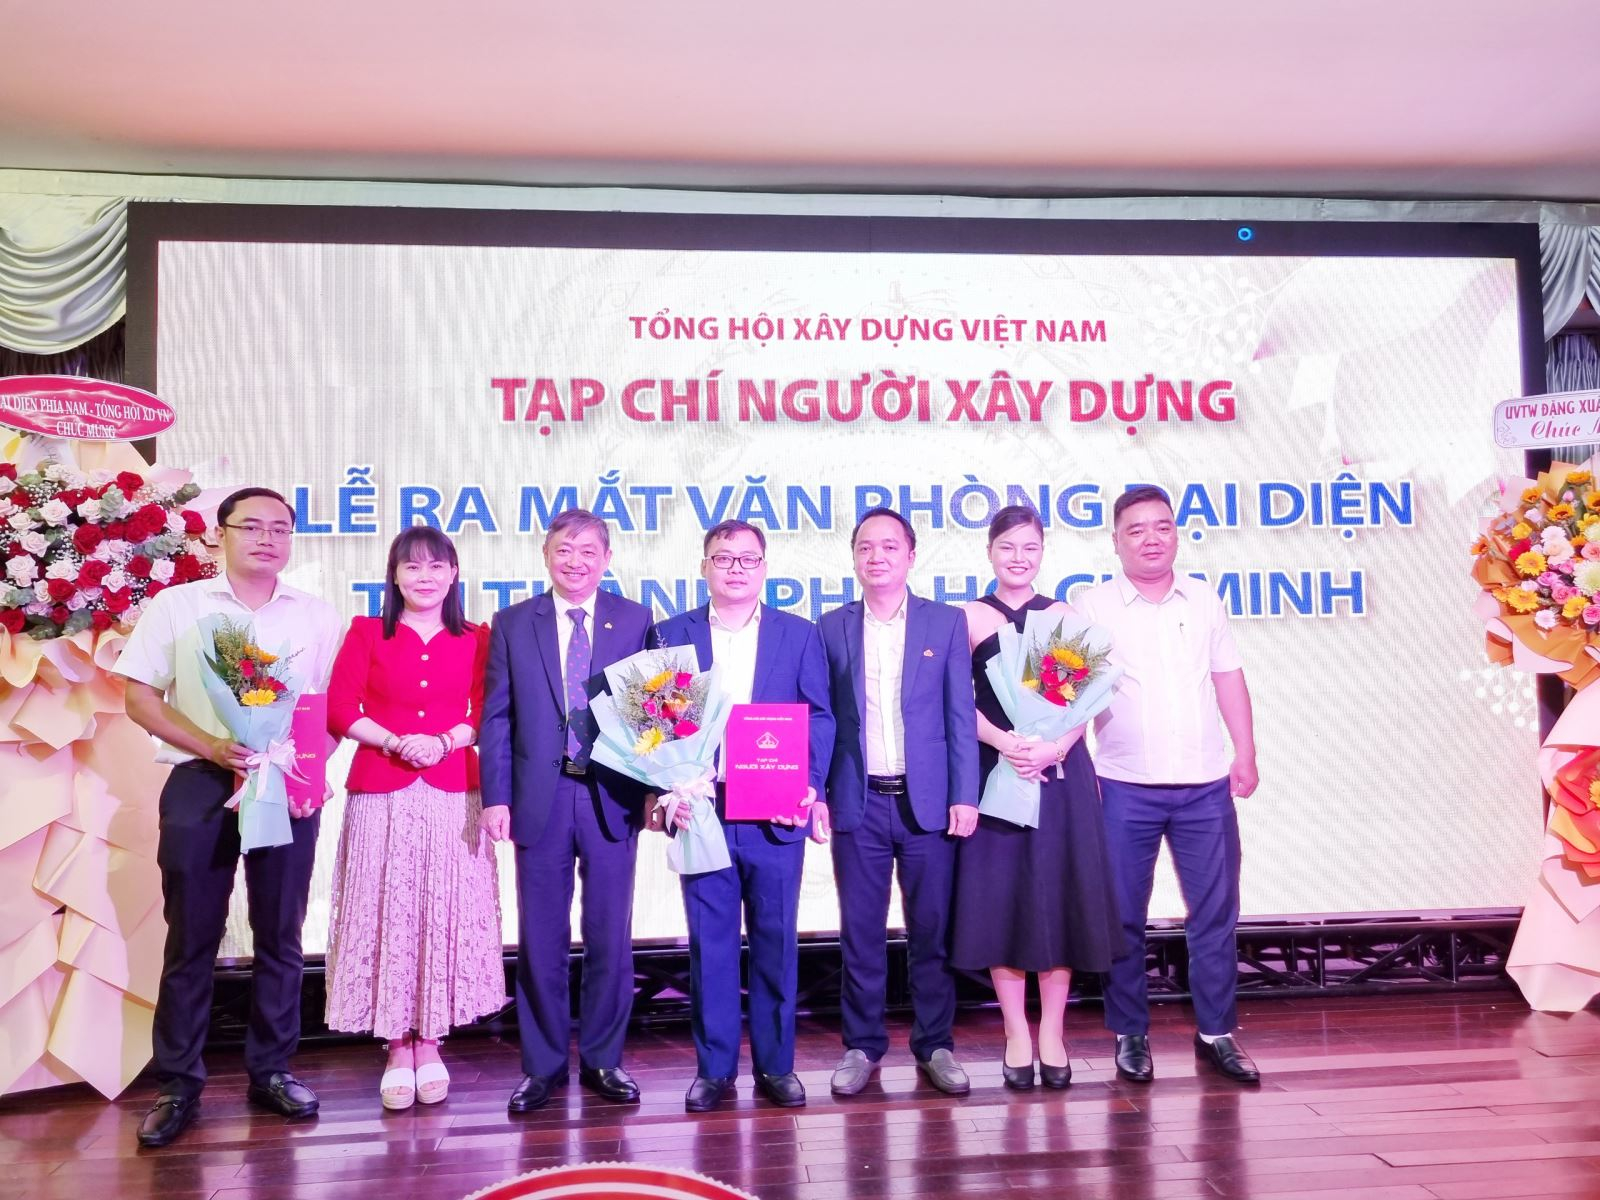 Tập thể cán bộ Văn phòng đại diện Tạp chí Người Xây dựng tại TP HCM nhận các quyết định và hoa chúc mừng của lãnh đạo Tổng hội Xây dựng Việt Nam, lãnh đạo Tạp chí Người Xây dựng và đại diện Sở TT&amp;amp;TT TP.HCM